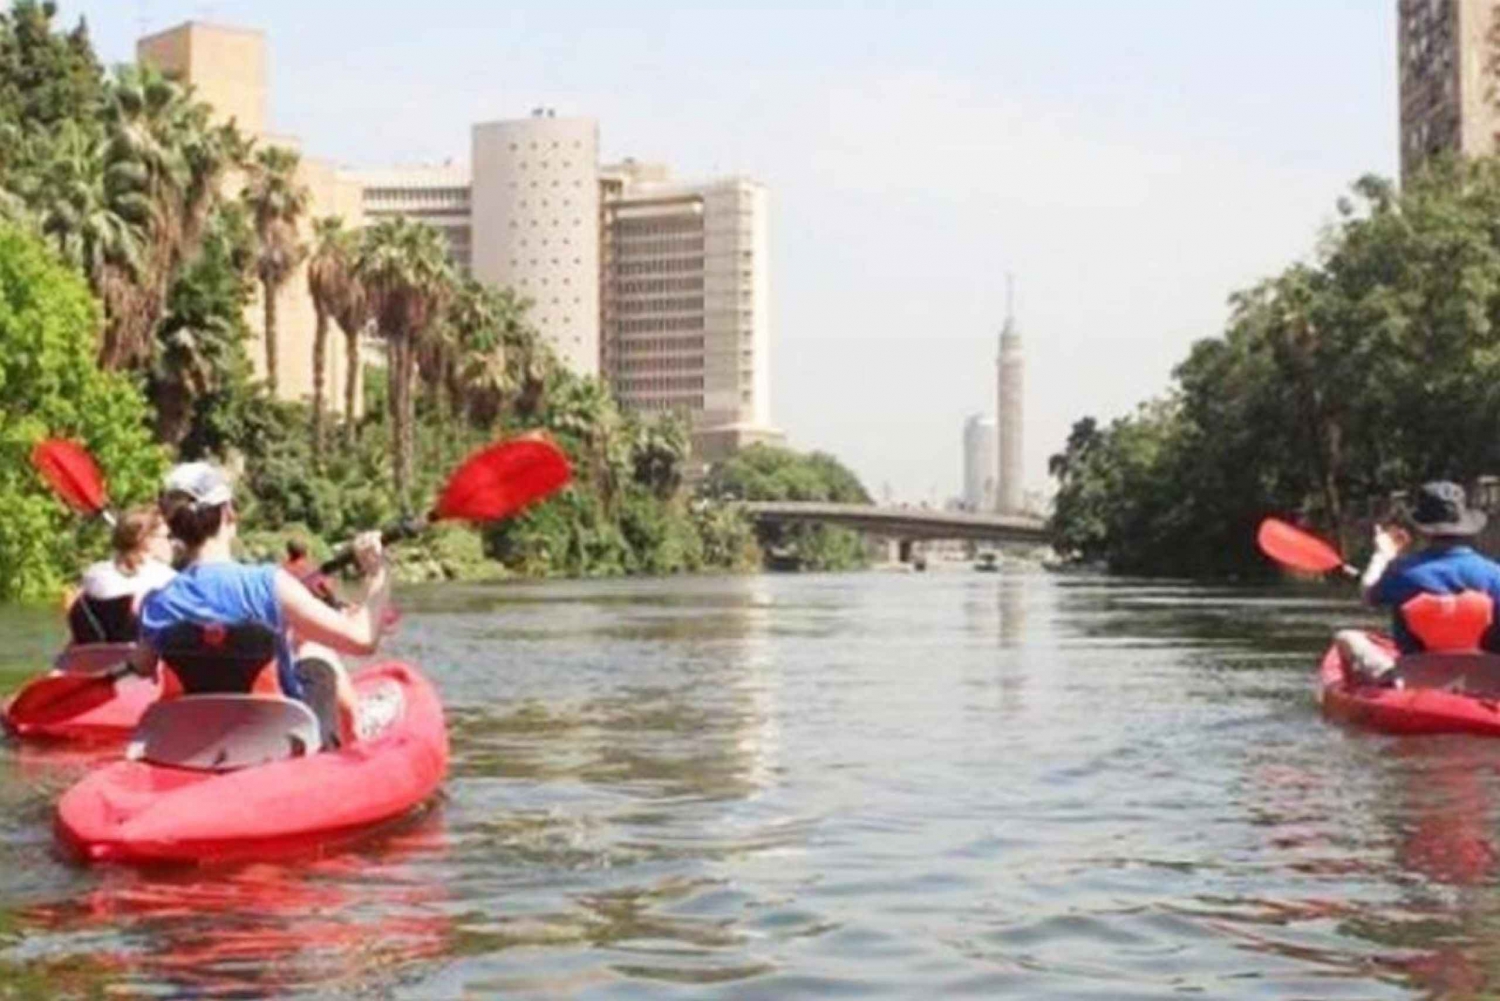 Kajaktur på Nilen i Kairo